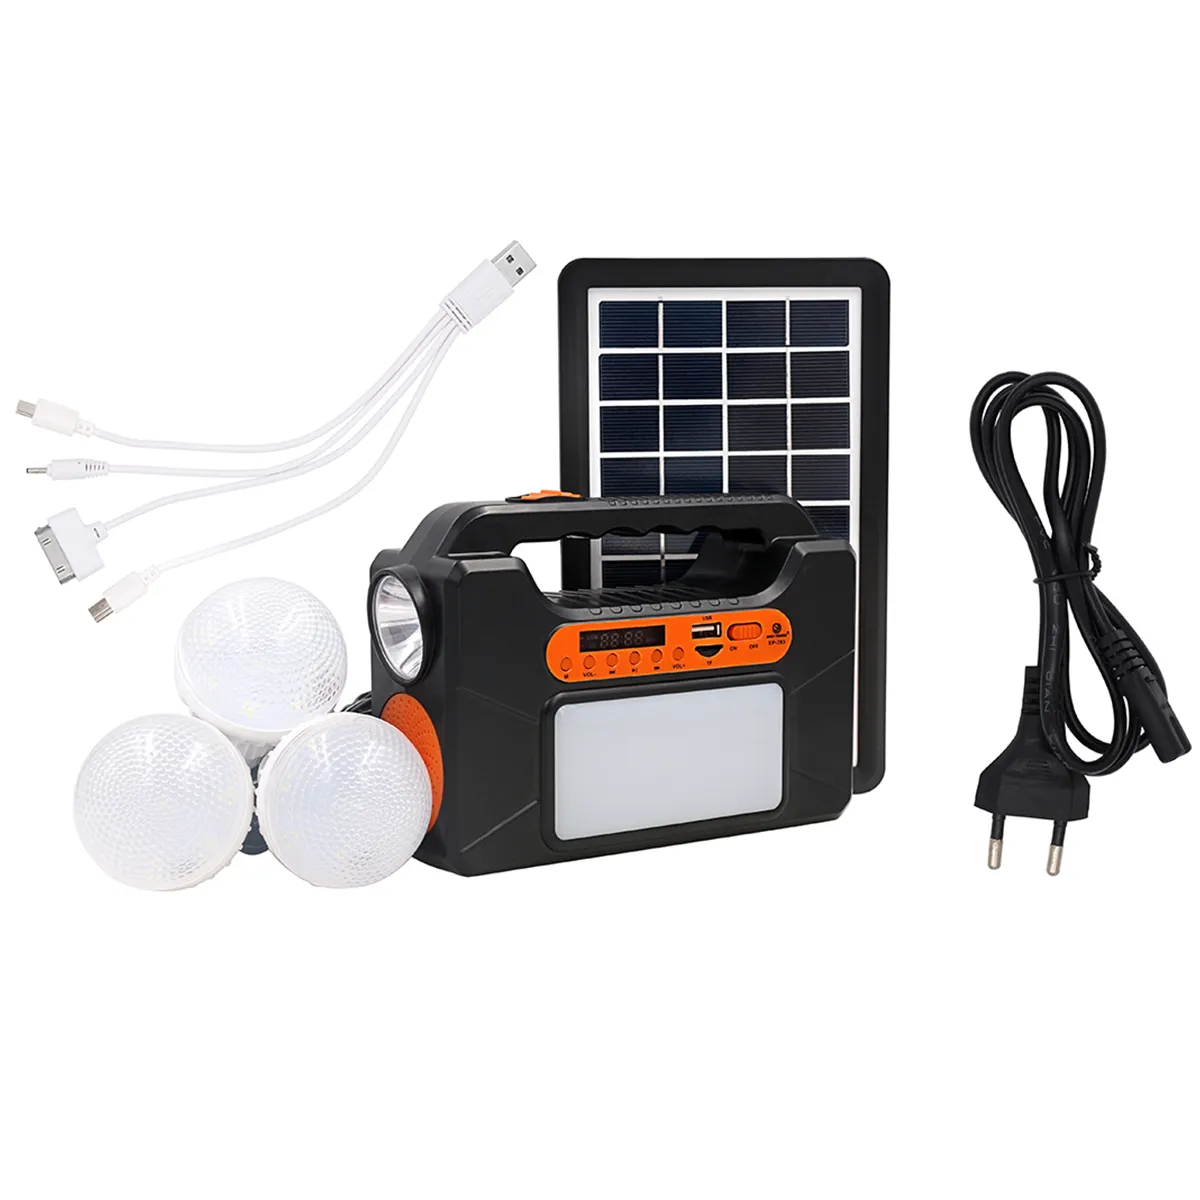 Alto-falante de energia solar portátil, mini sistema de iluminação solar de emergência com alto-falante e led para carregamento móvel